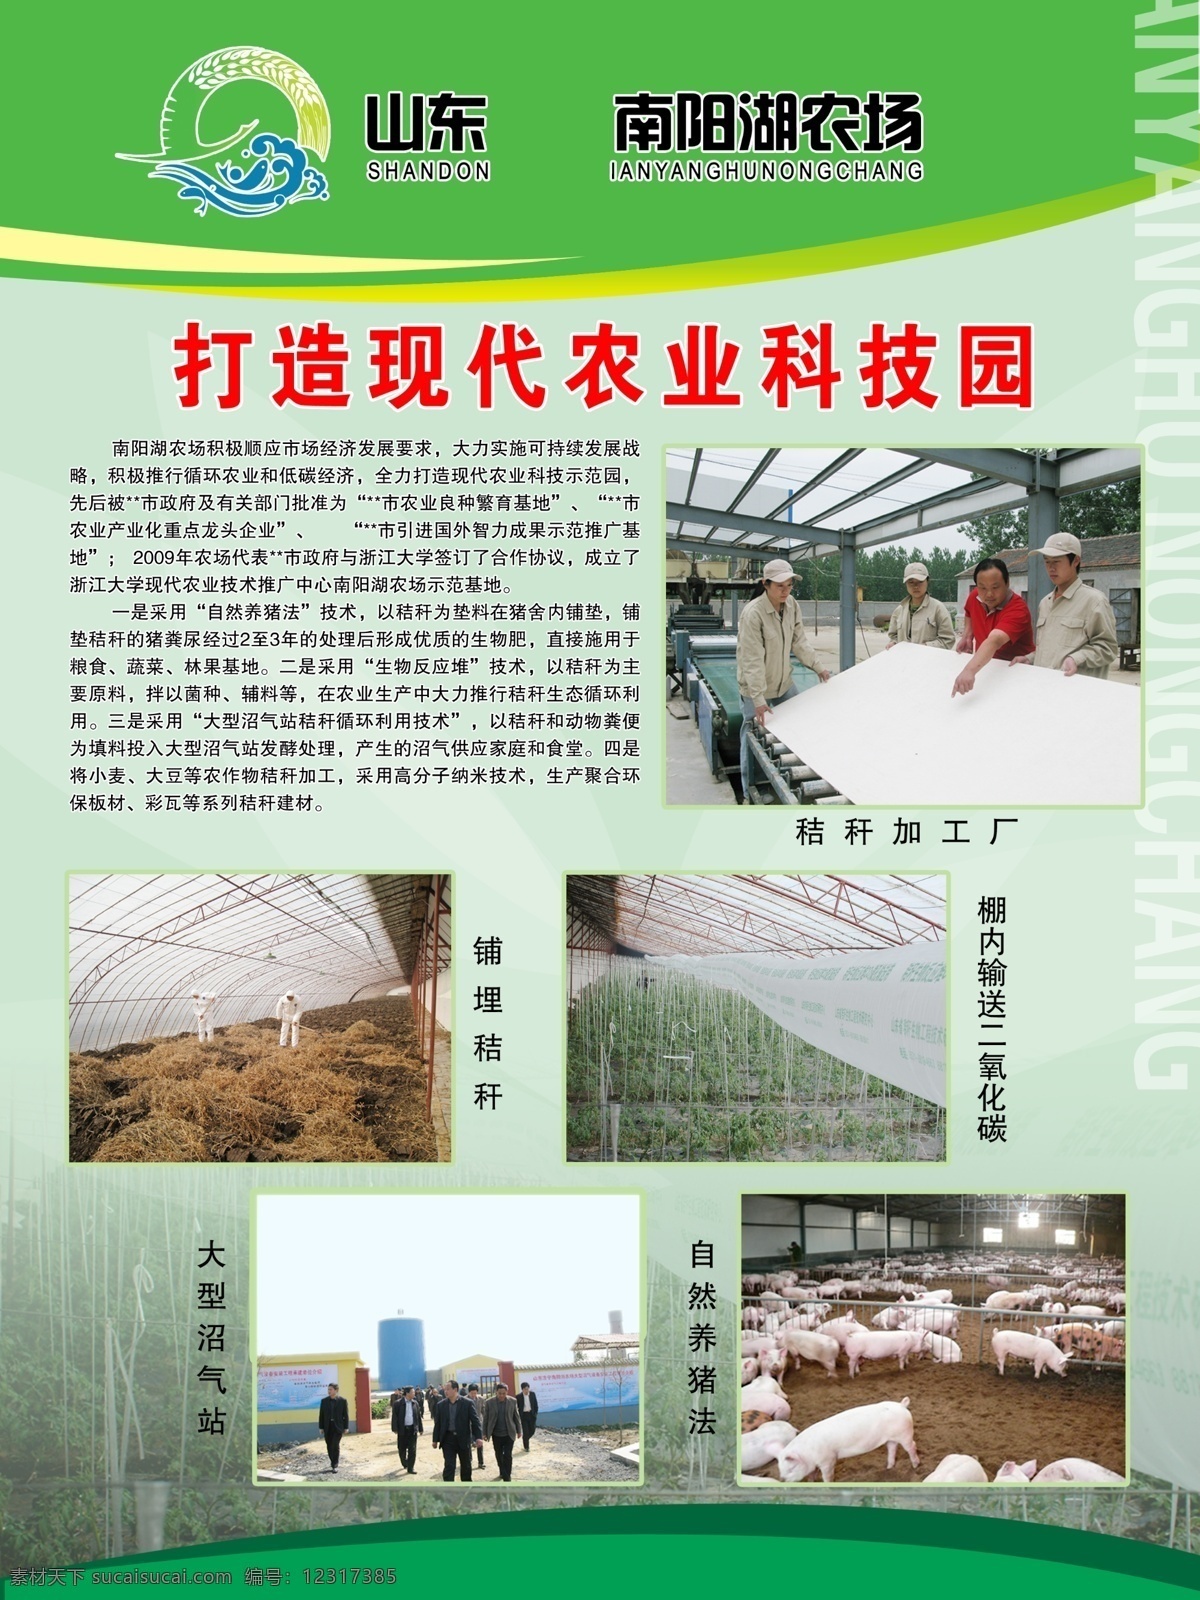 农业科技海报 农业 科技园 养殖 展板 绿色 背景 广告设计模板 源文件